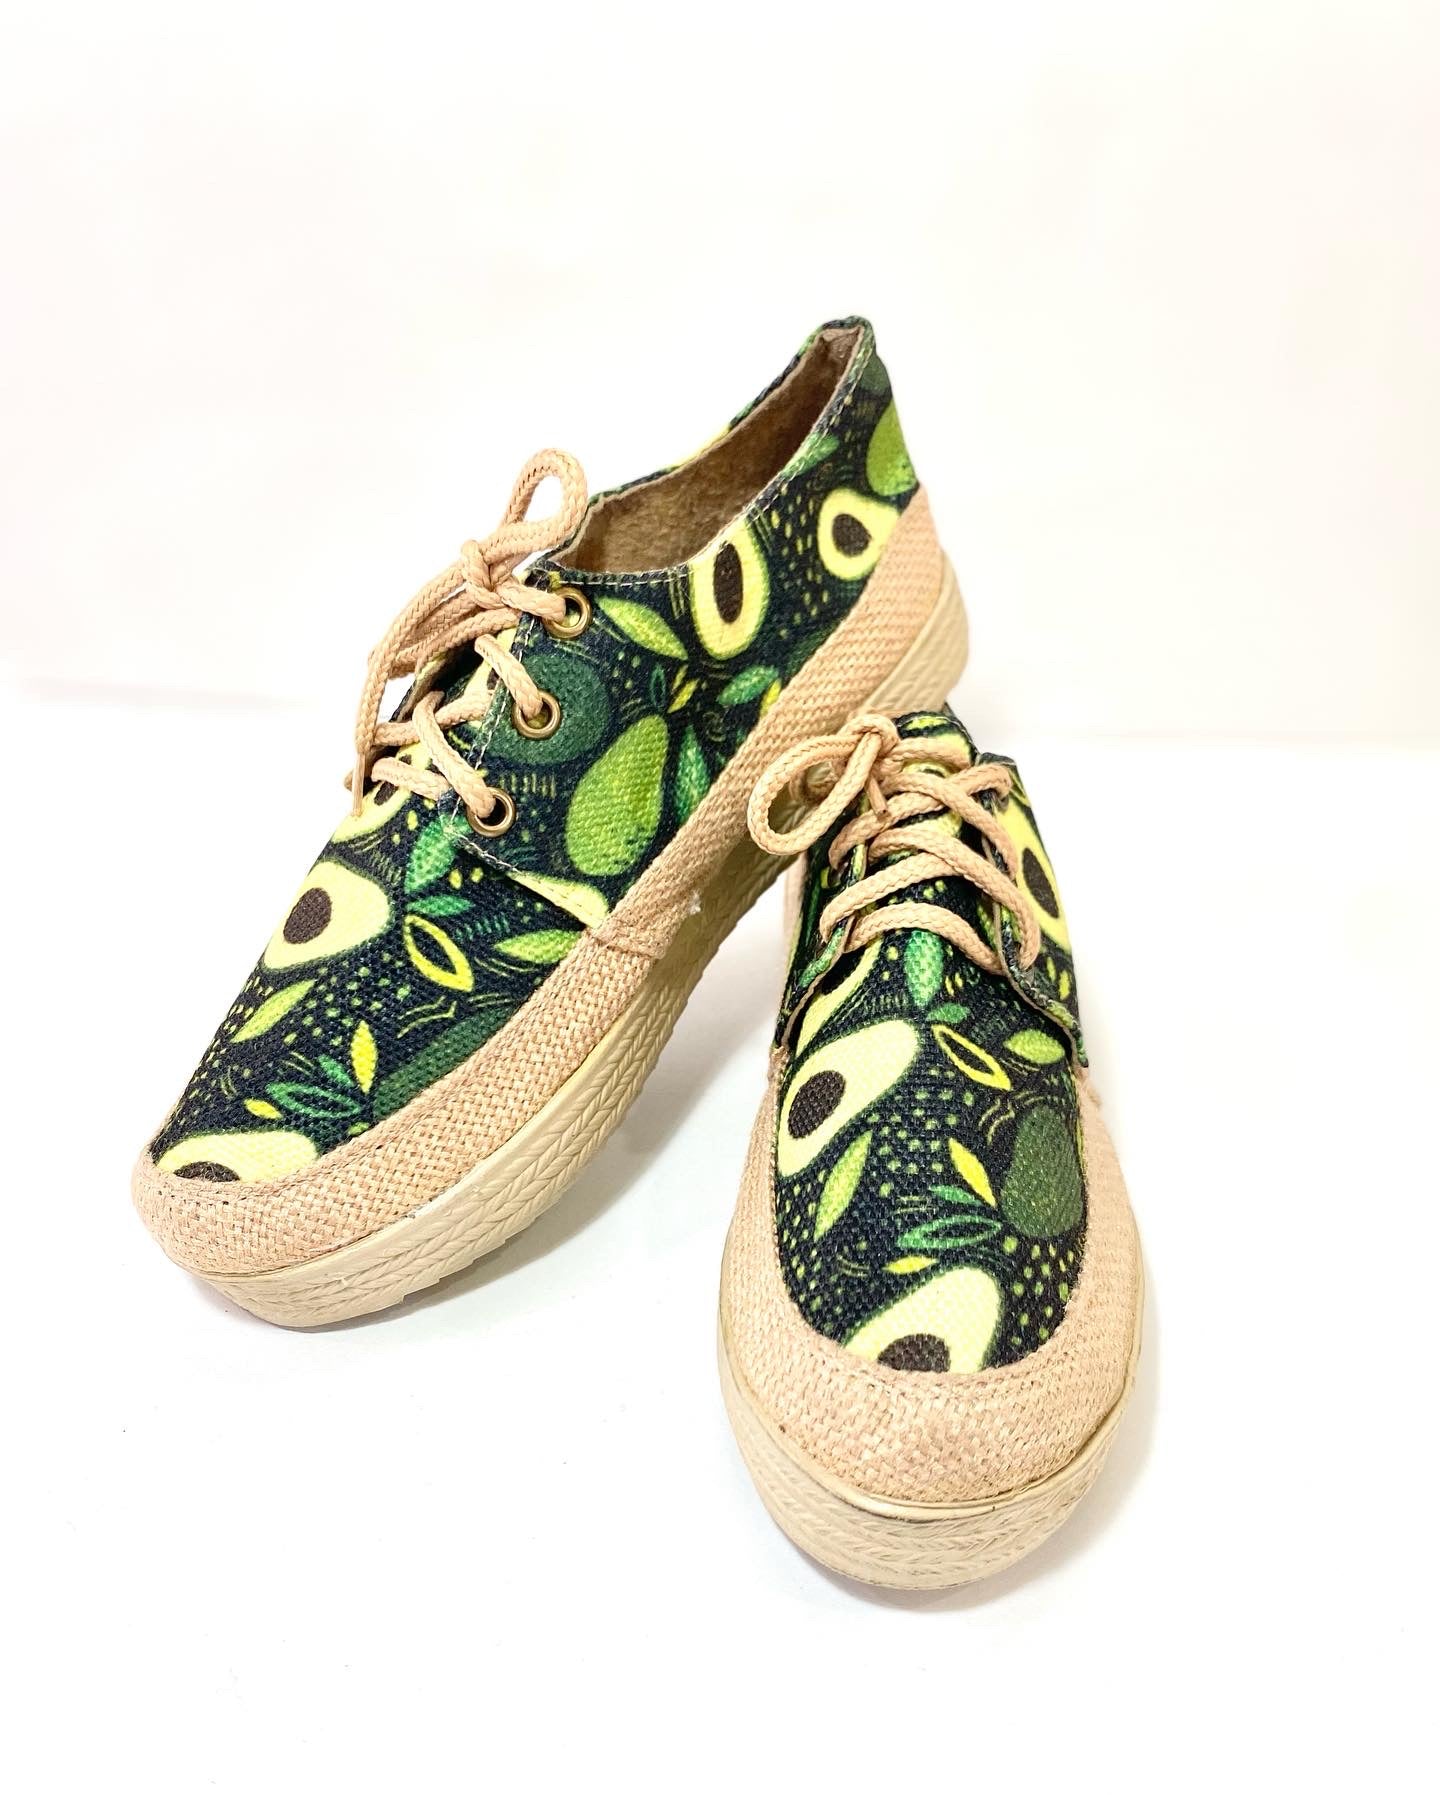 Avocados shoes